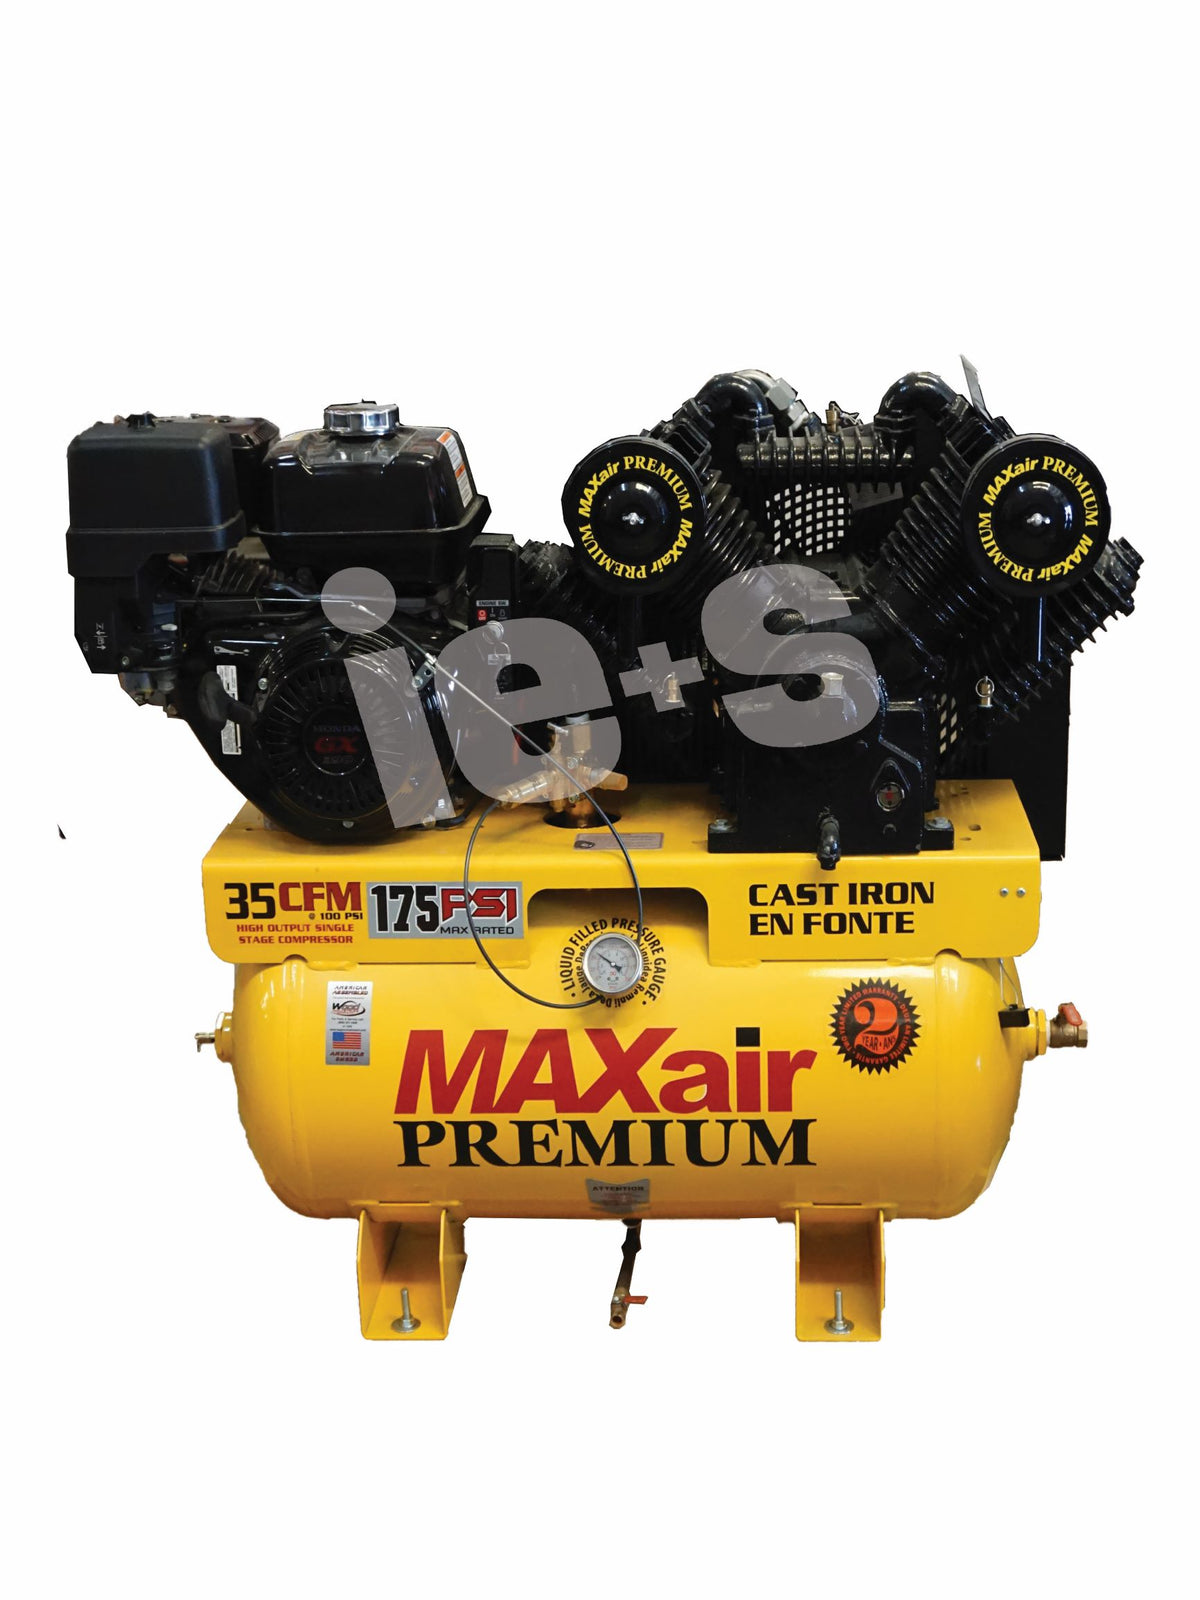 MAXAIR Premium 13 HP Gas Air Compressor